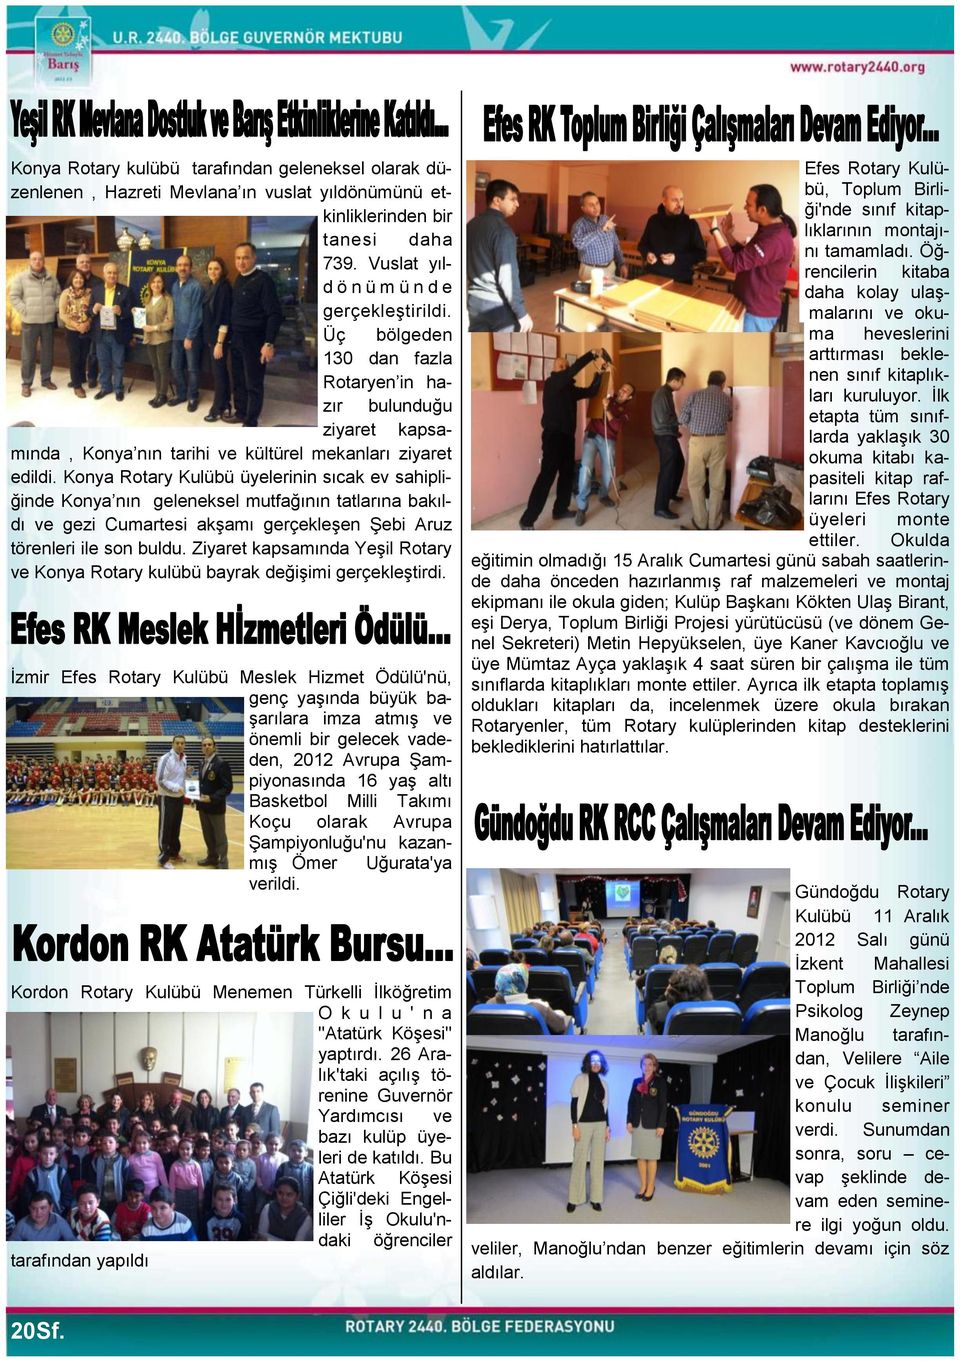 Konya Rotary Kulübü üyelerinin sıcak ev sahipliğinde Konya nın geleneksel mutfağının tatlarına bakıldı ve gezi Cumartesi akģamı gerçekleģen ġebi Aruz törenleri ile son buldu.